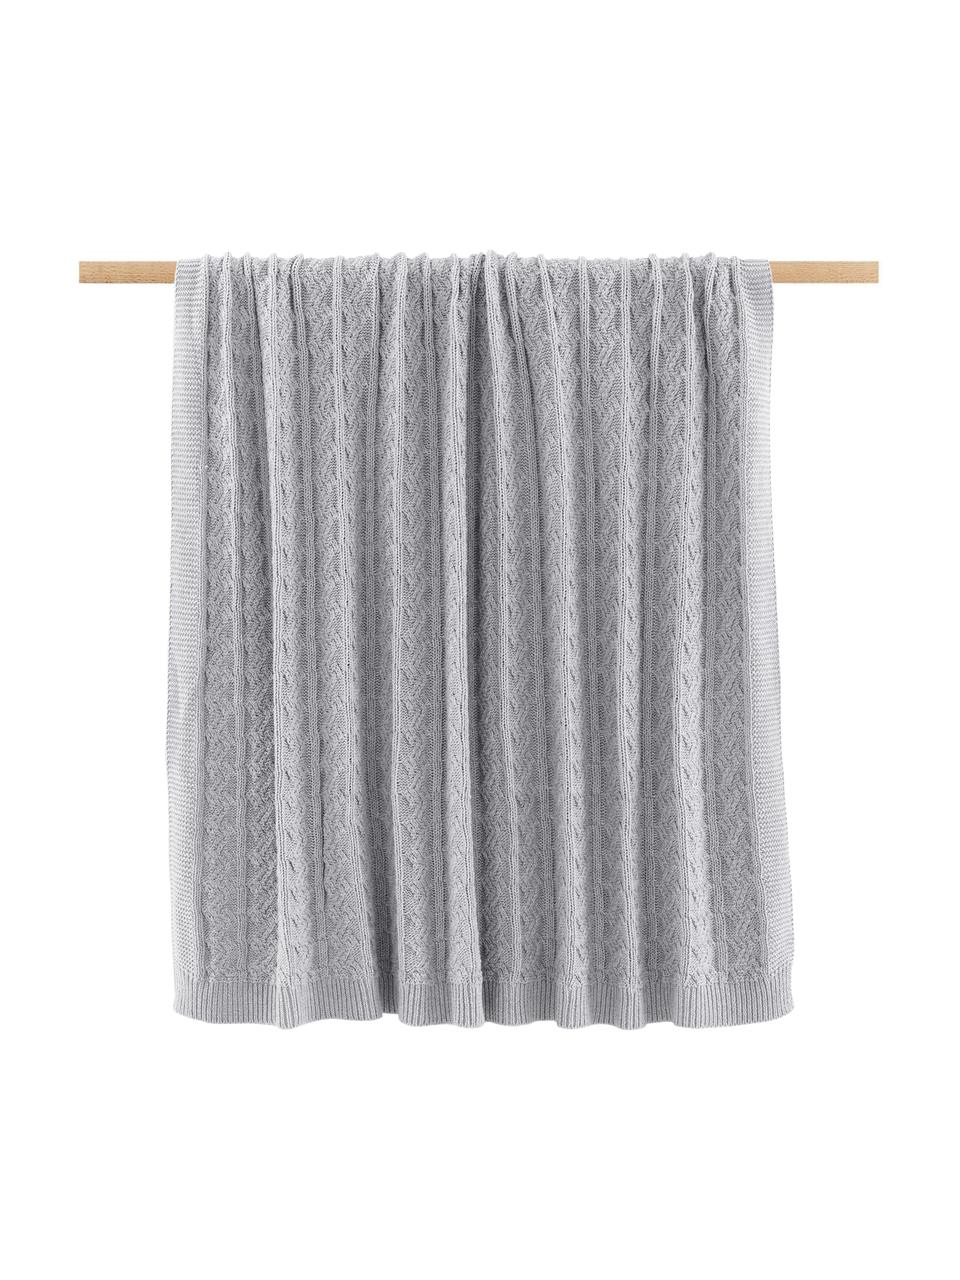 Coperta a maglia color grigio chiaro con motivo a trecce Caleb, 100% cotone, Grigio chiaro, Larg. 130 x Lung. 170 cm